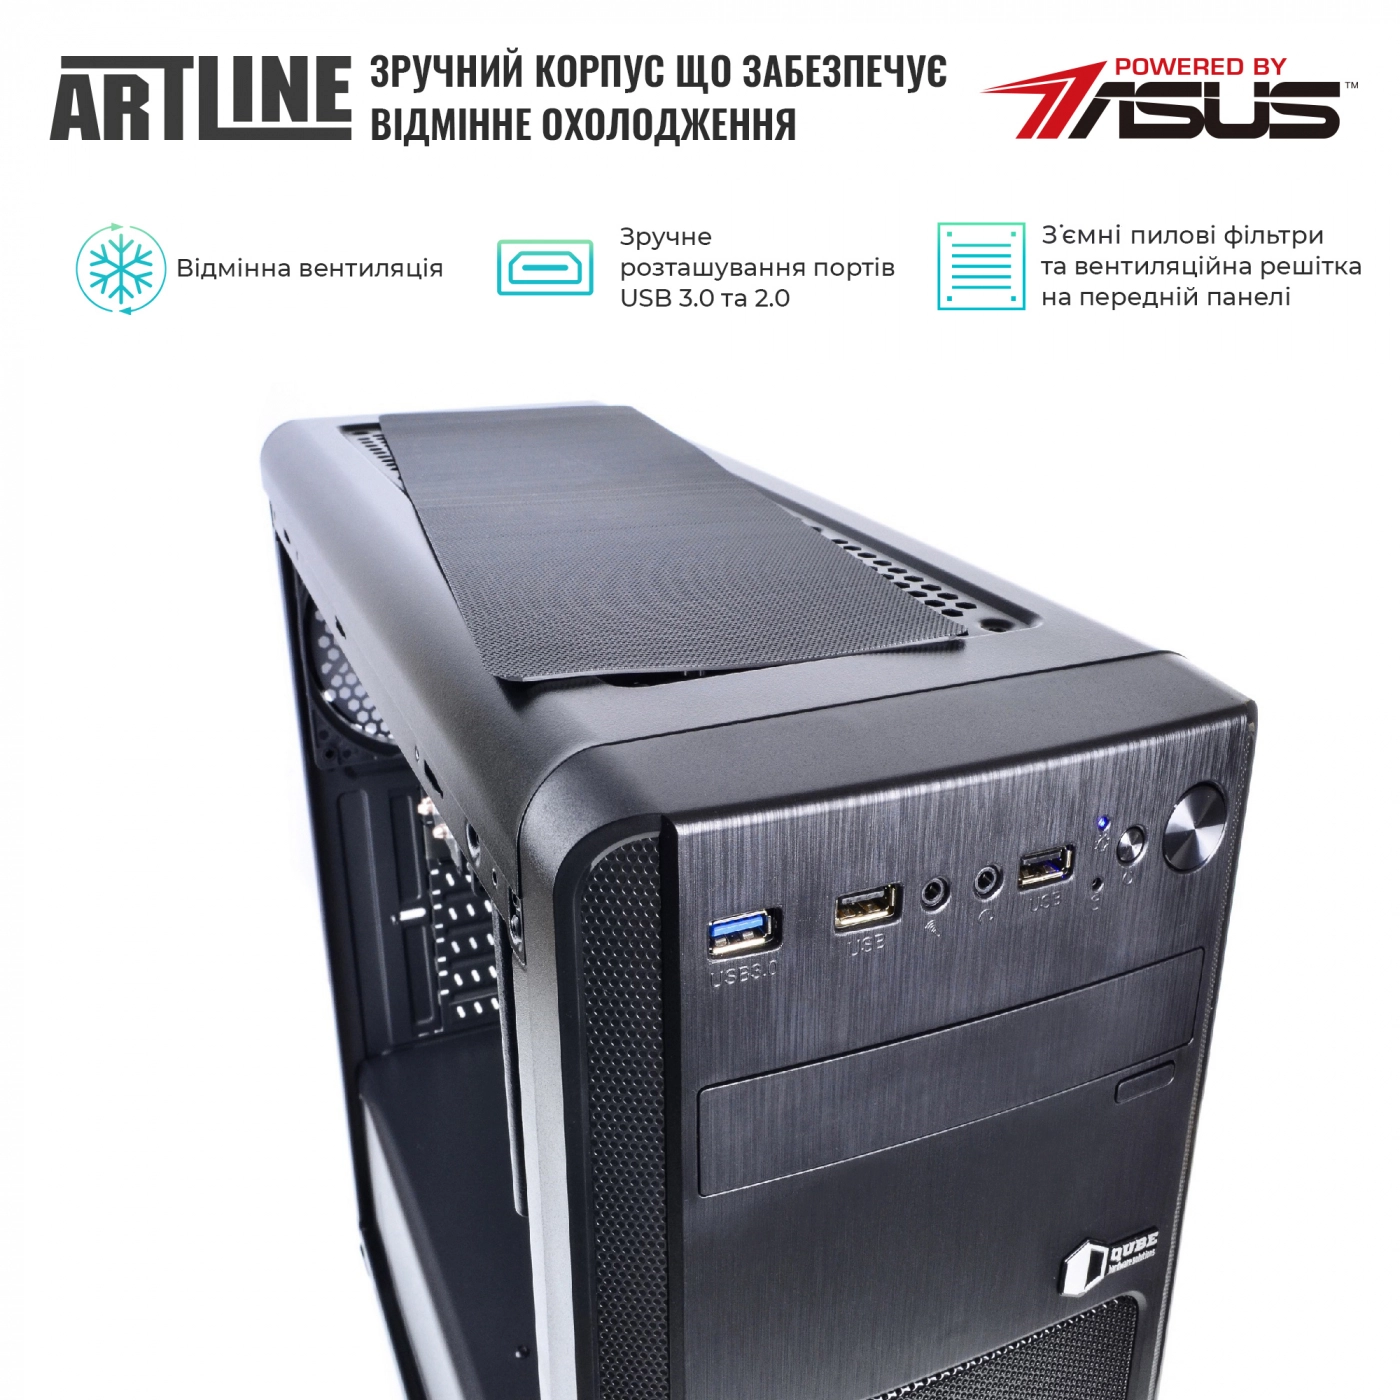 Купить Сервер ARTLINE Business T25v33 - фото 4